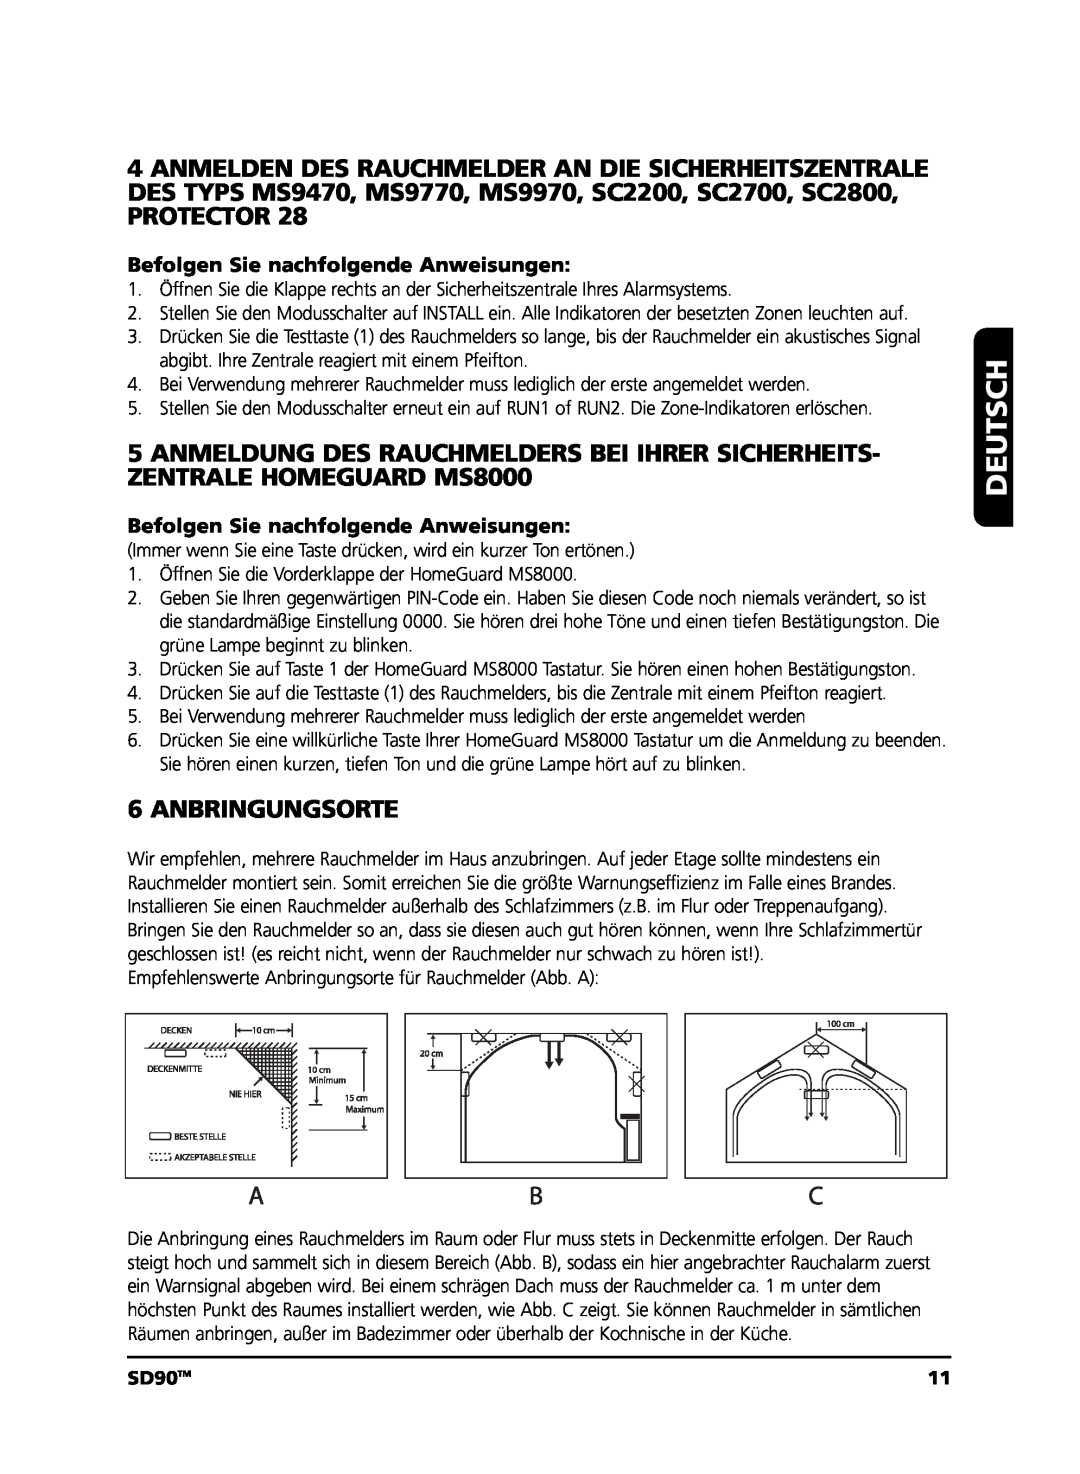 Marmitek user manual Protector, Anbringungsorte, Deutsch, SD90TM 